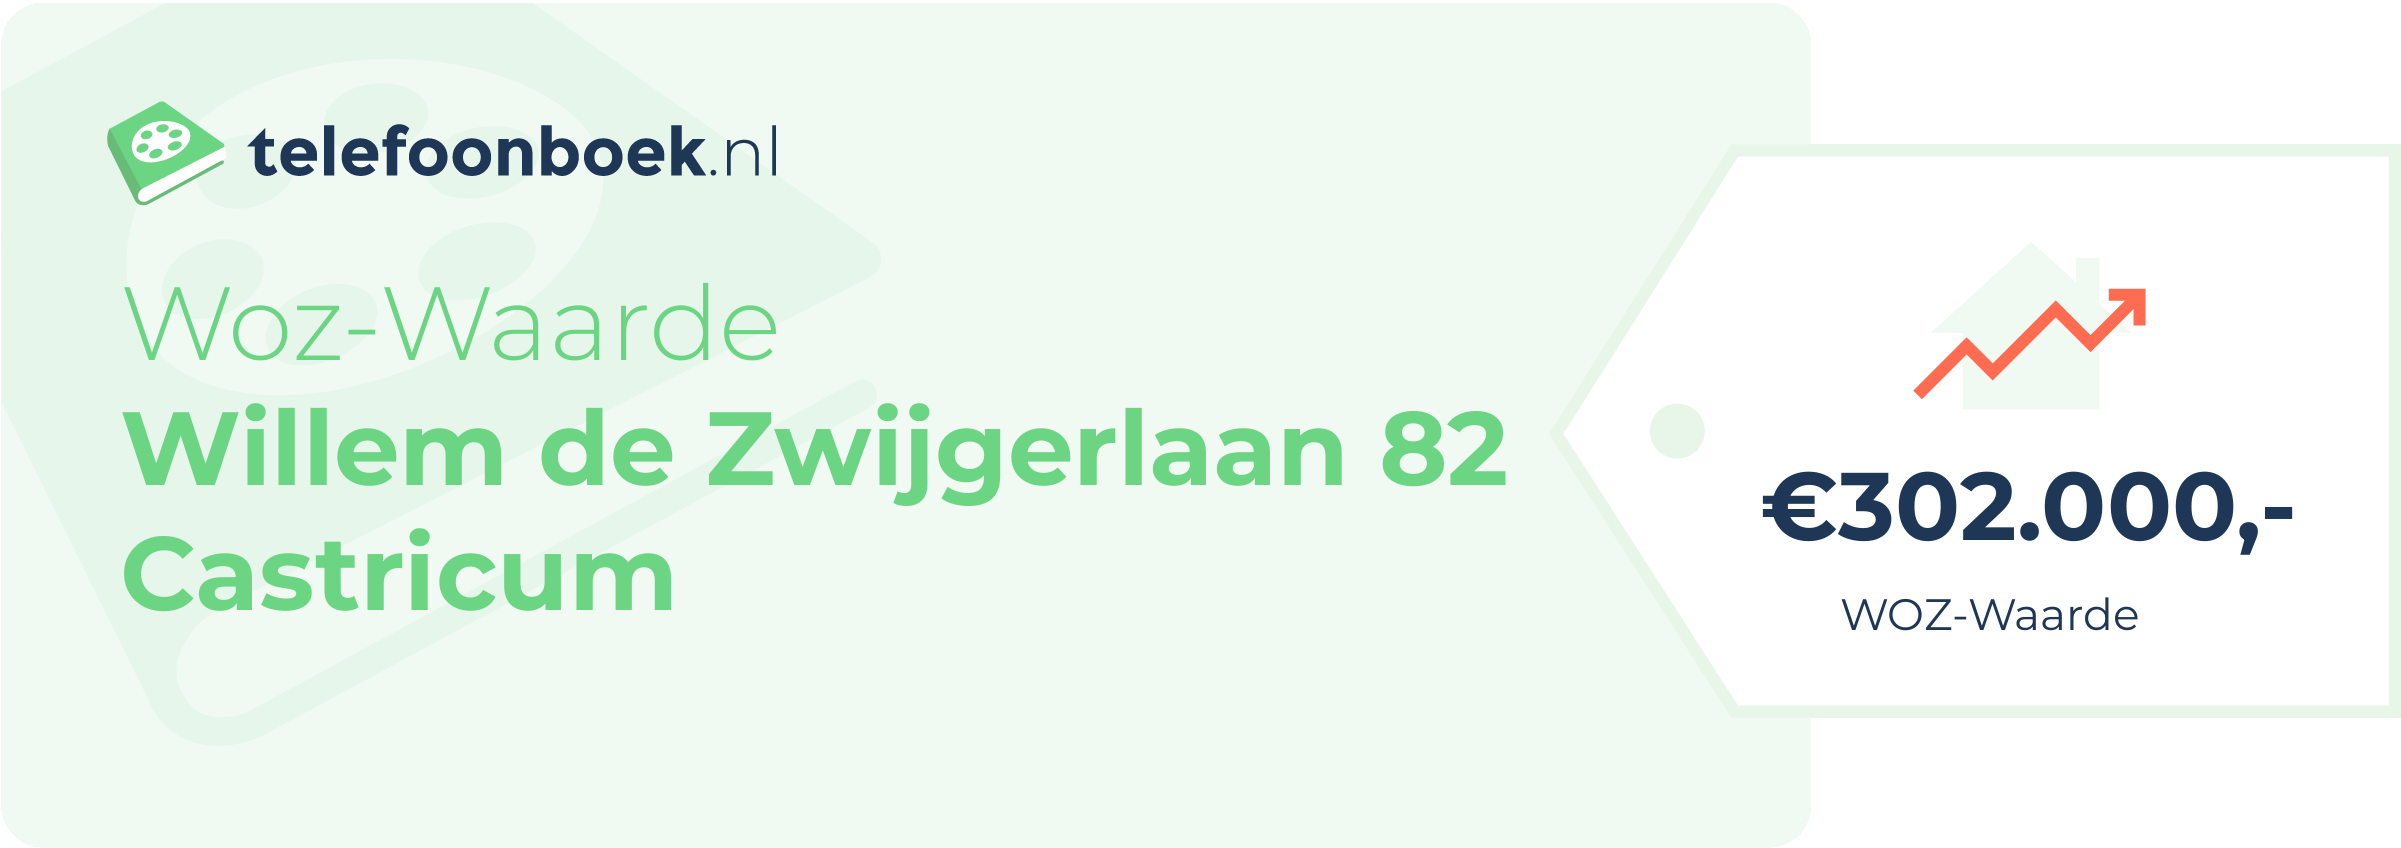 WOZ-waarde Willem De Zwijgerlaan 82 Castricum